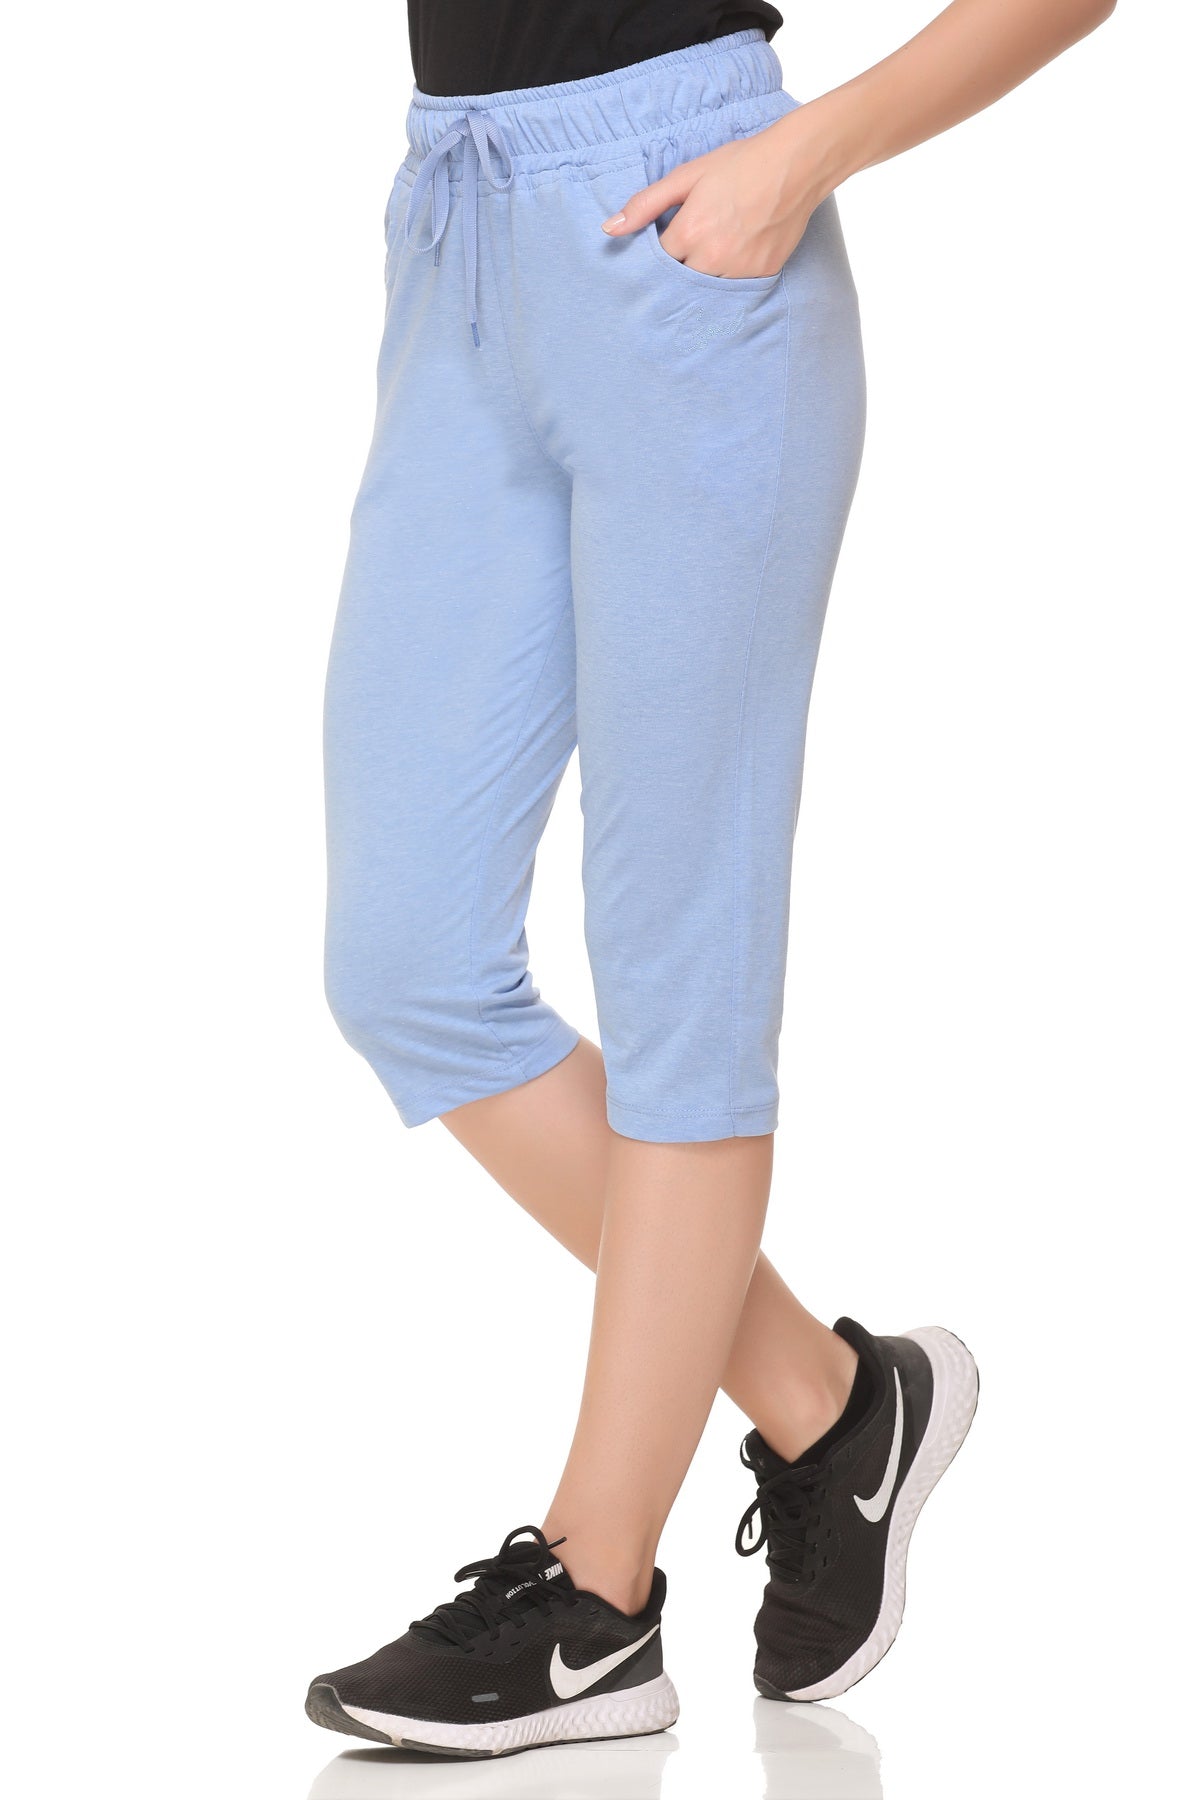 Cotton Capris For Women - Half Pants Pack of 2 (Sky Blue & Mauve